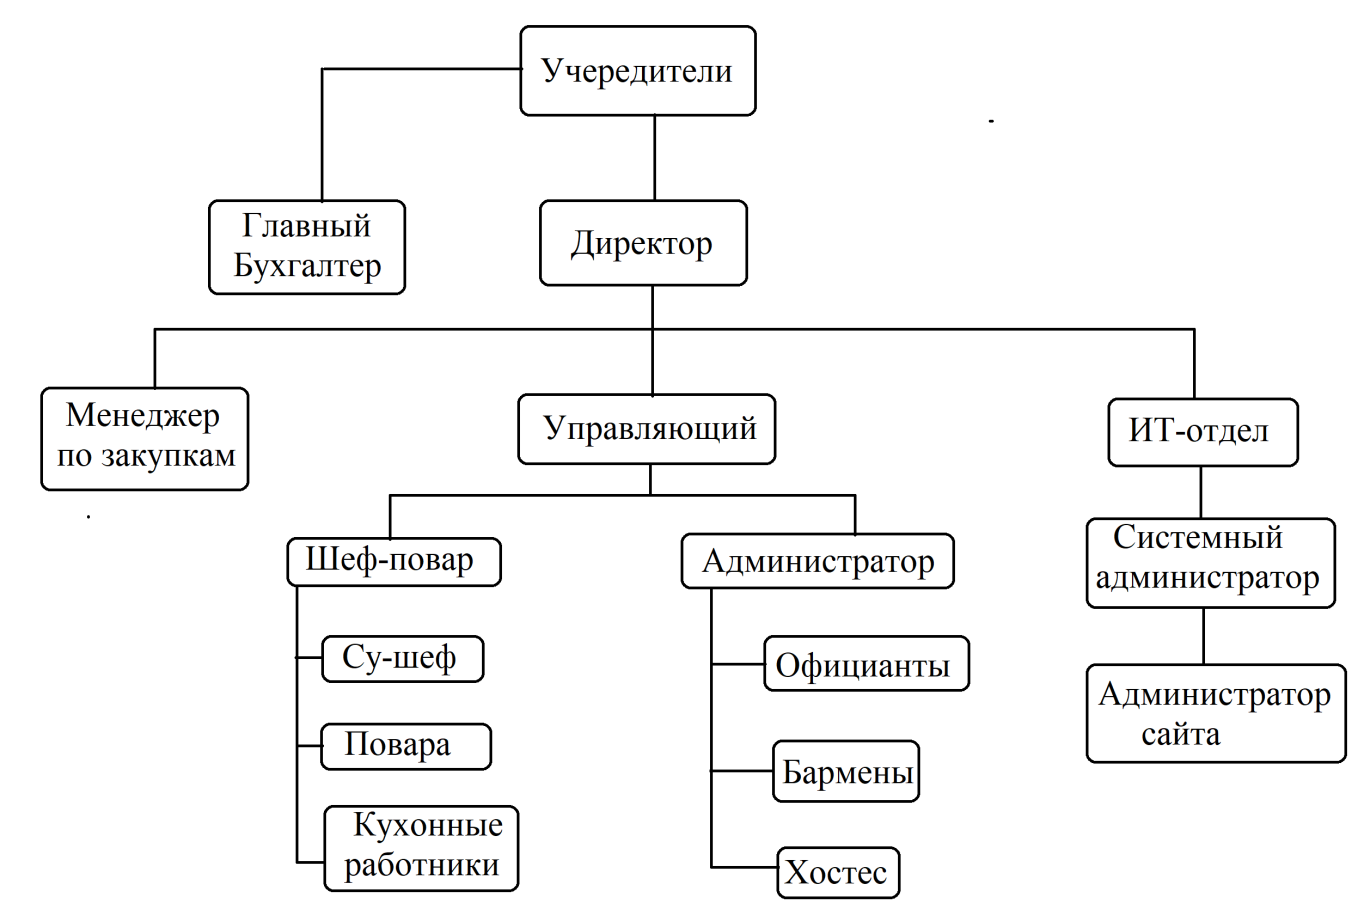 Организационная структура ресторана схема